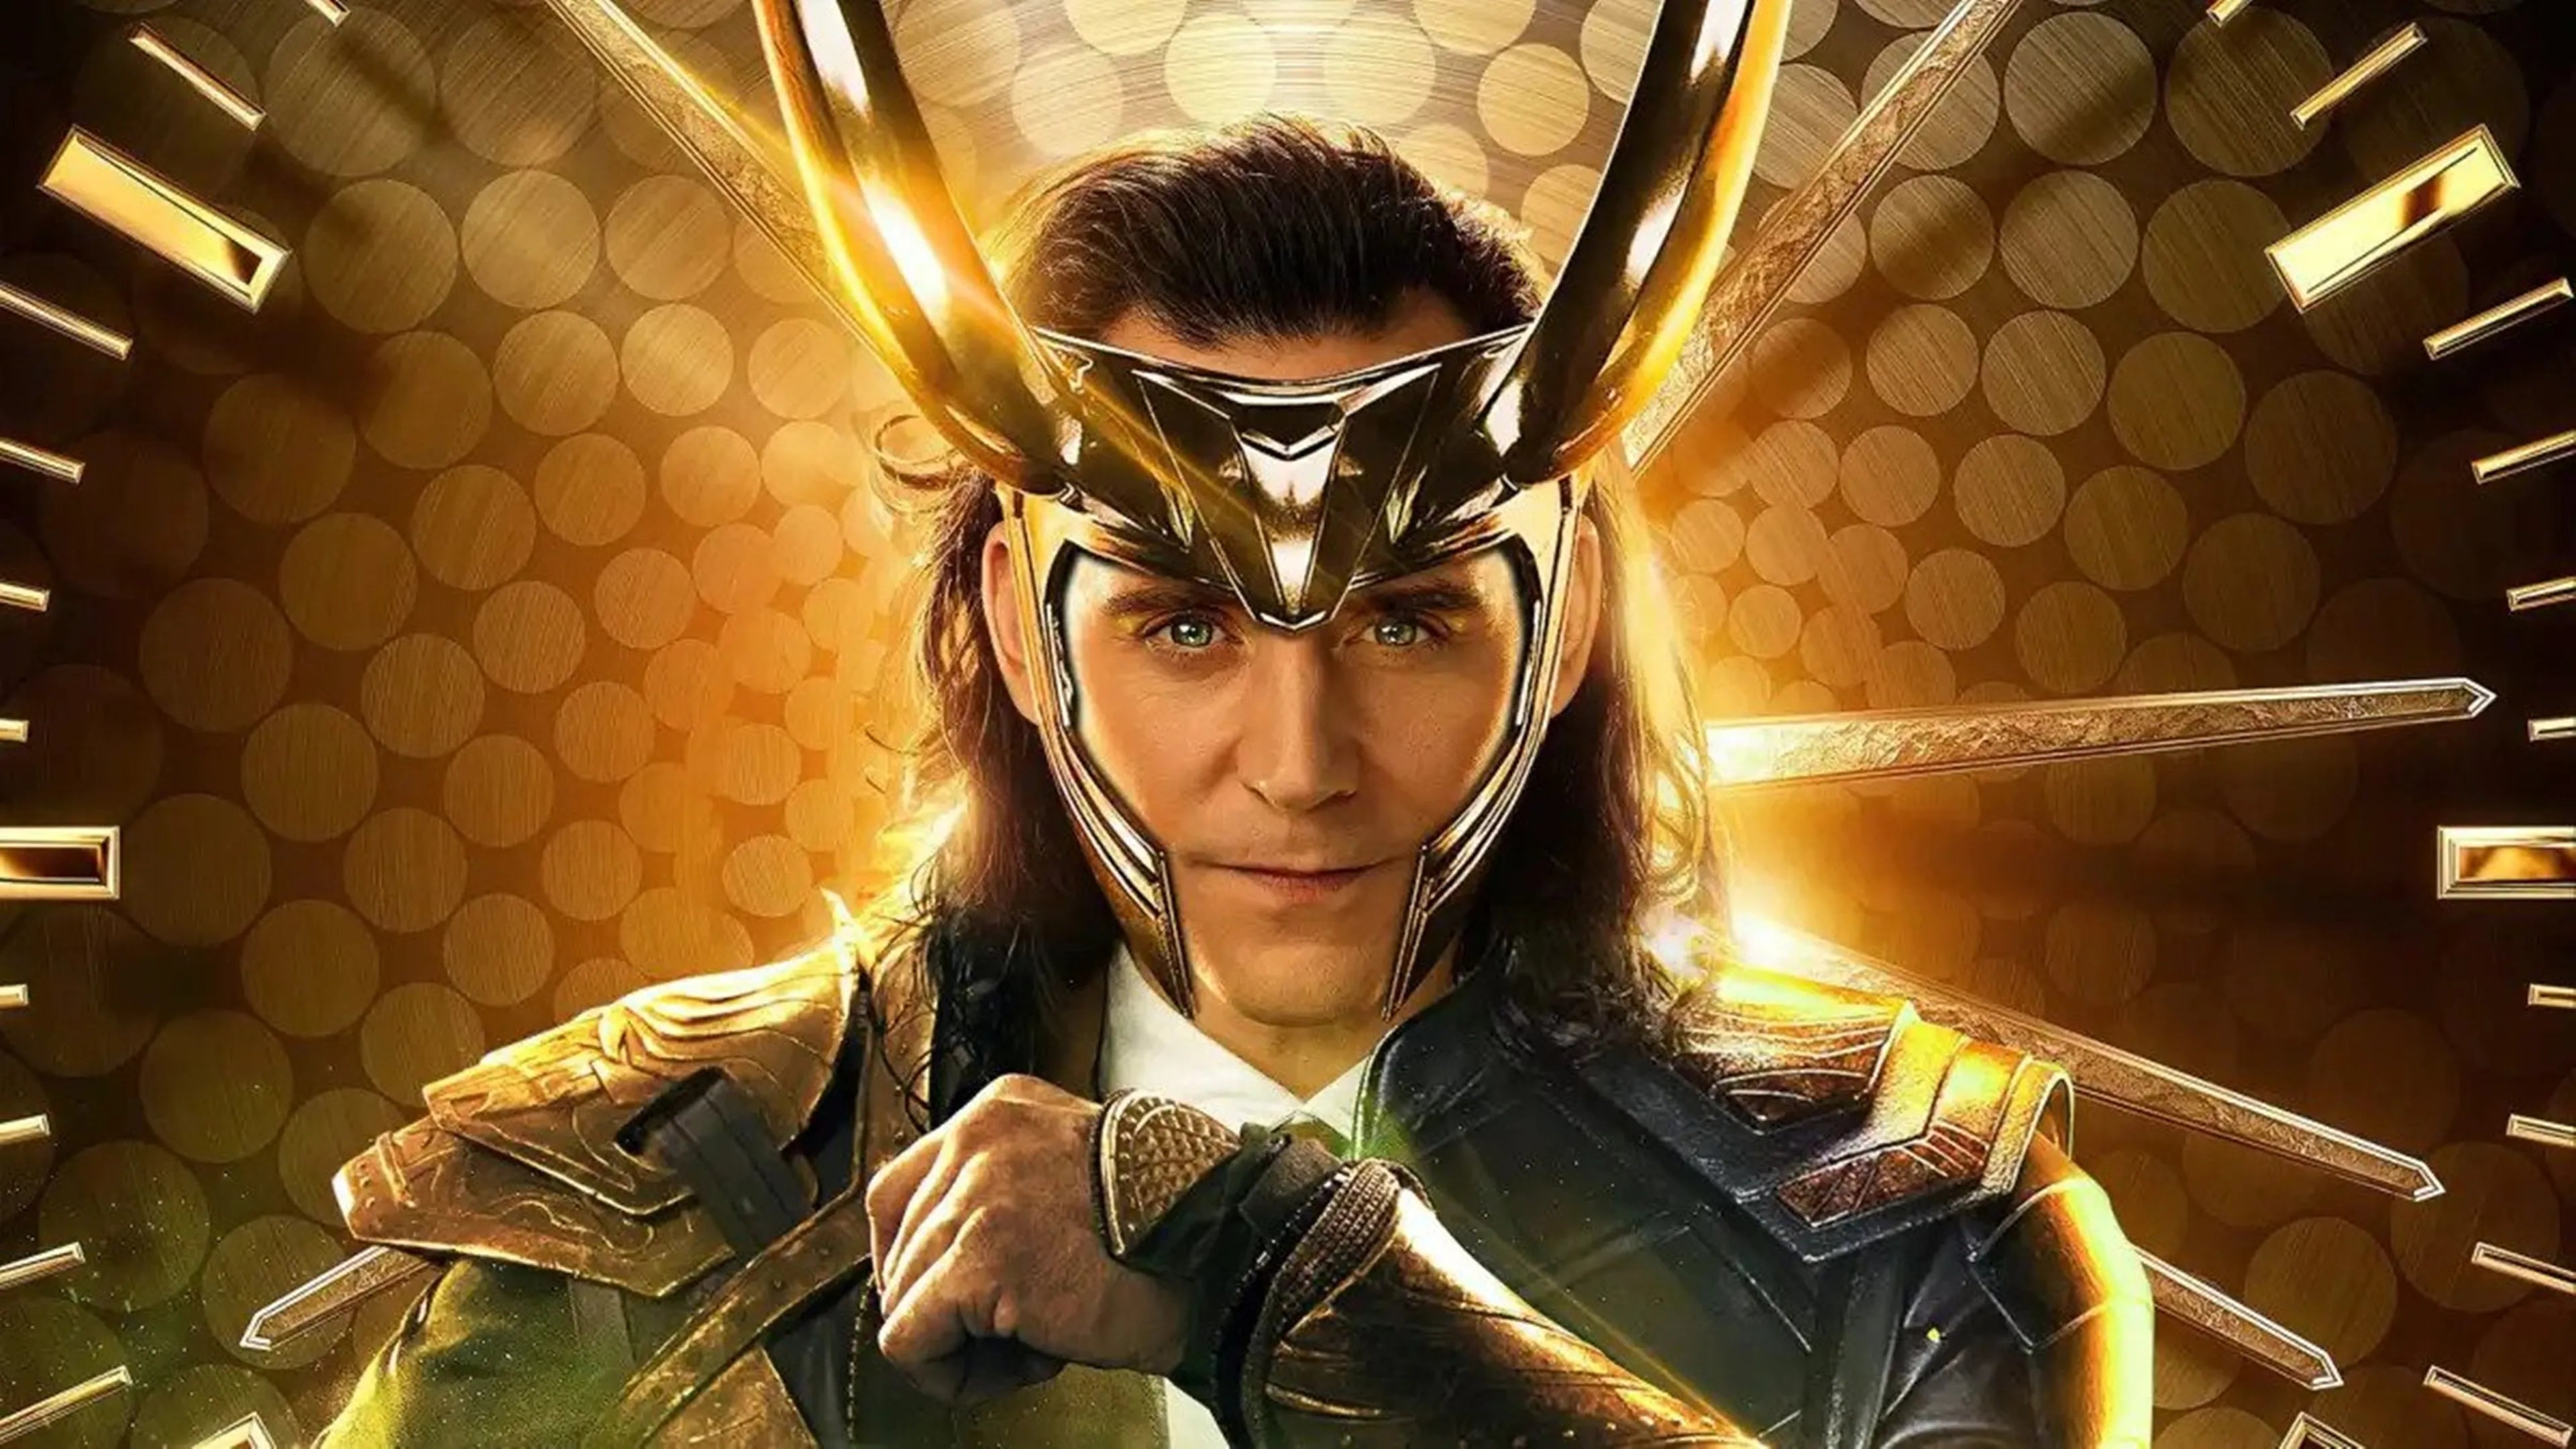 Se lanza el tráiler oficial de la segunda temporada de Loki | #TuDosisGeek